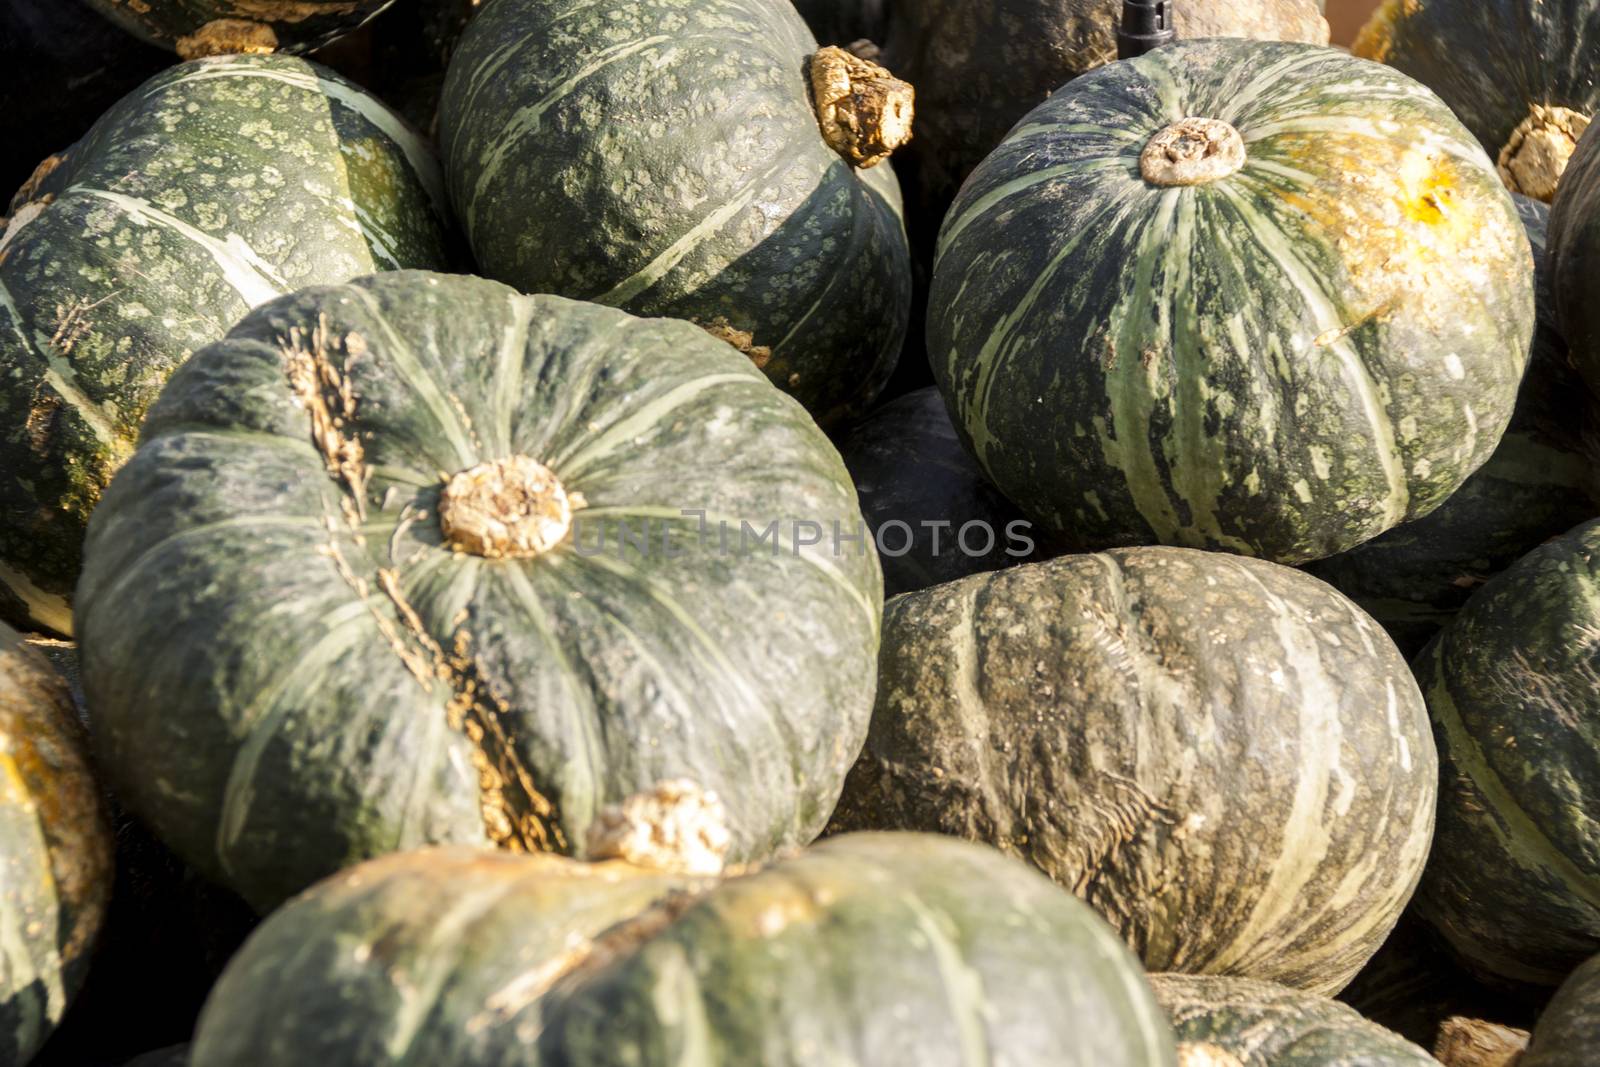 Green Gr��ner Hokkaido cucurbita pumpkin pumpkins from autumn harvest on a market